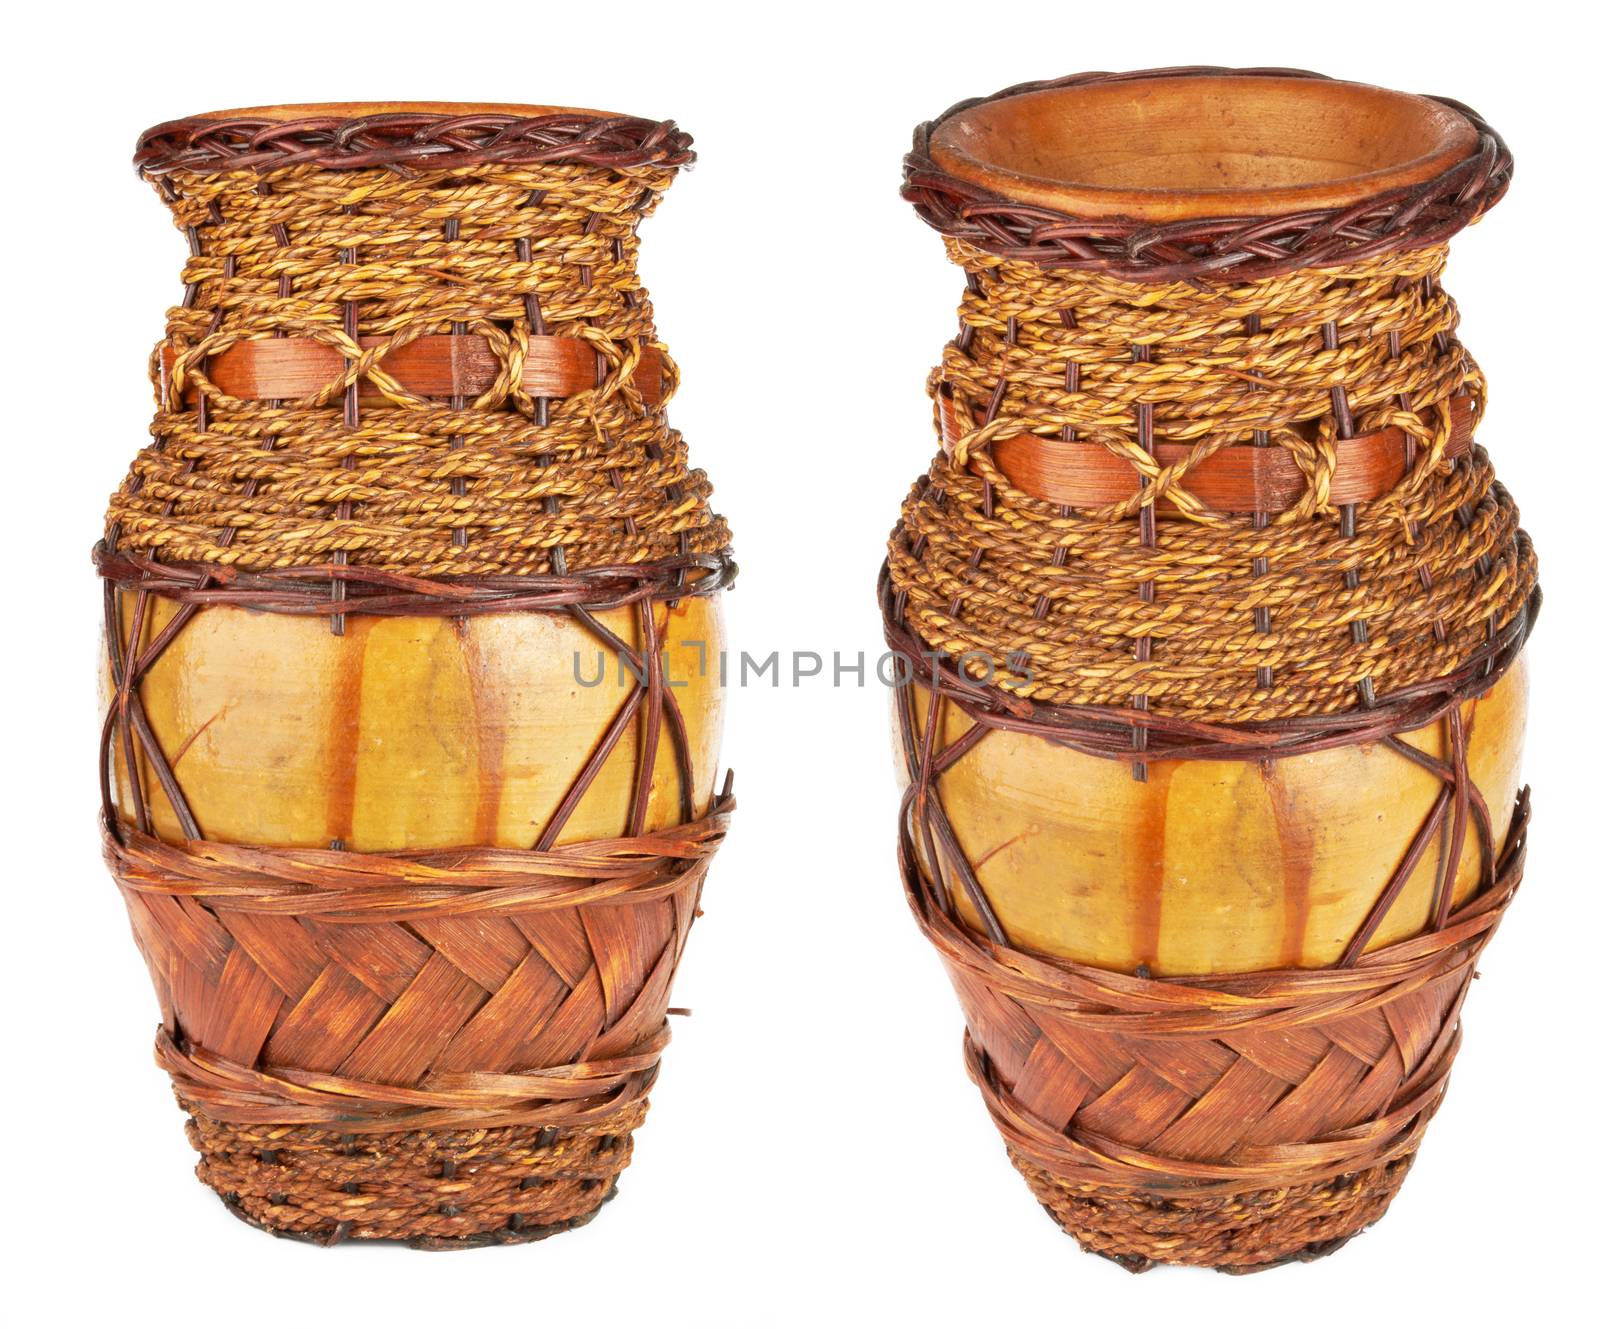 Clay jug, old ceramic vase isolated on white background  